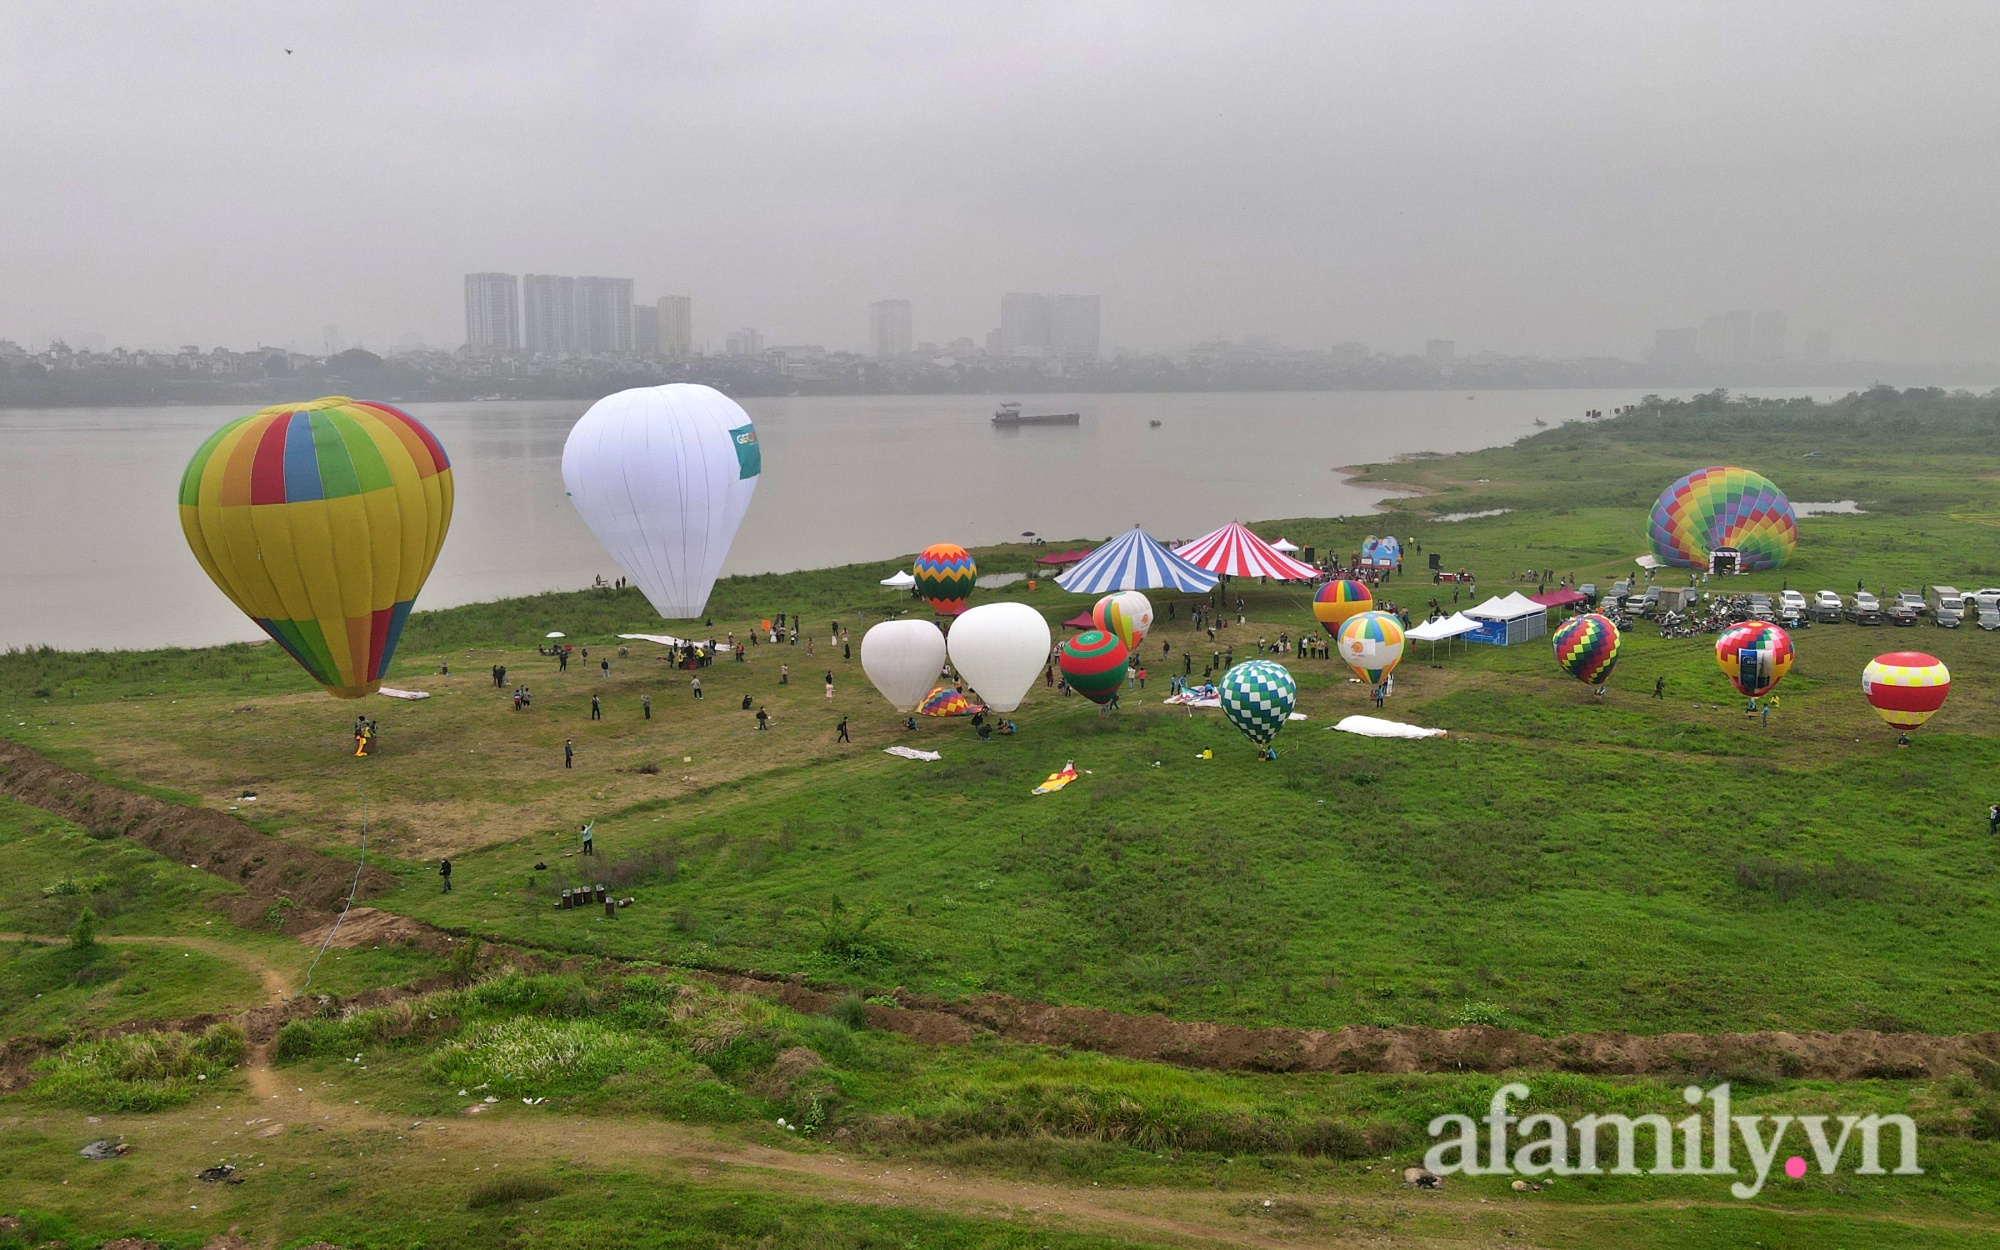 Lần đầu tiên tổ chức Ngày hội khinh khí cầu tại Hà Nội: Nhanh chân đến để trải nghiệm khoảnh khắc hiếm có ngắm thành phố từ trên cao - Ảnh 12.